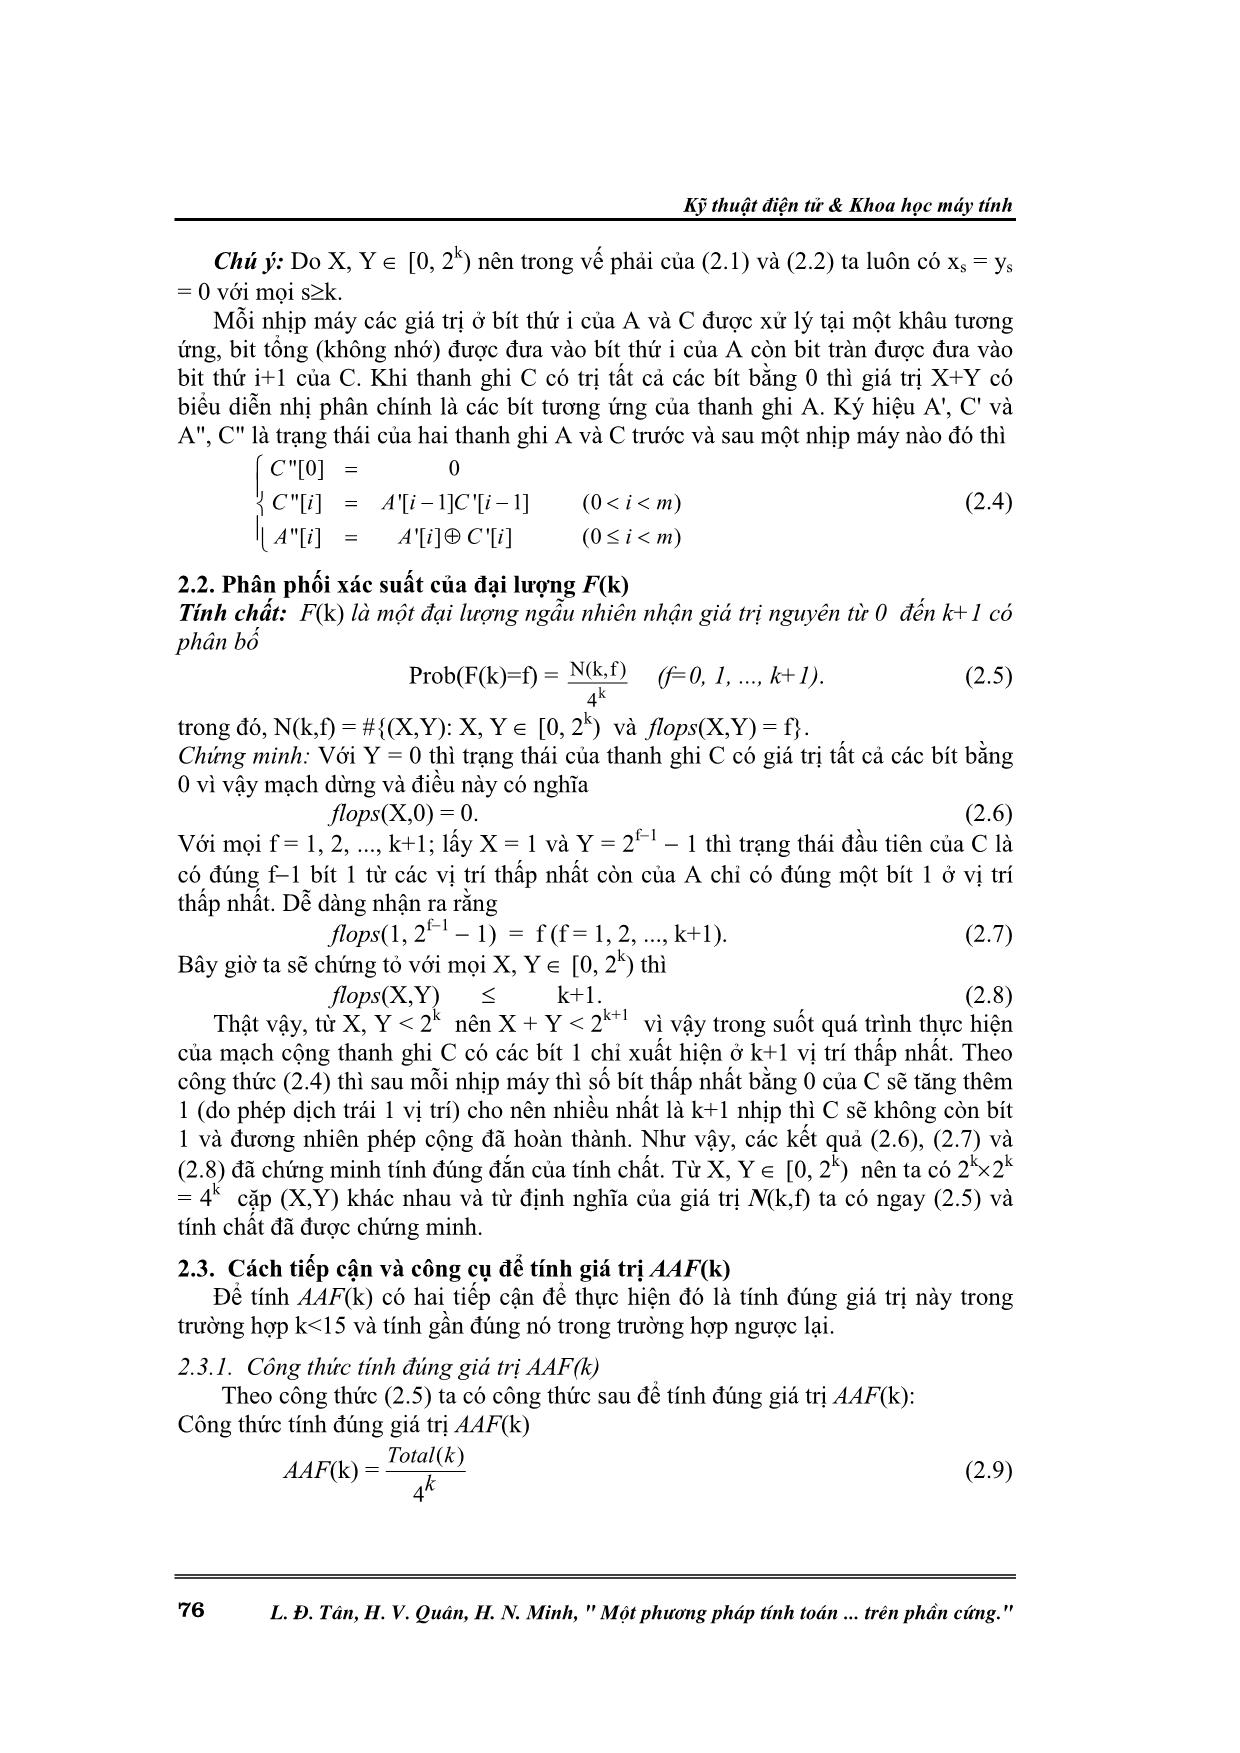 Một phương pháp tính toán tương quan giữa xung nhịp máy và phép cộng hai số nguyên khi thực hiện trên phần cứng trang 2